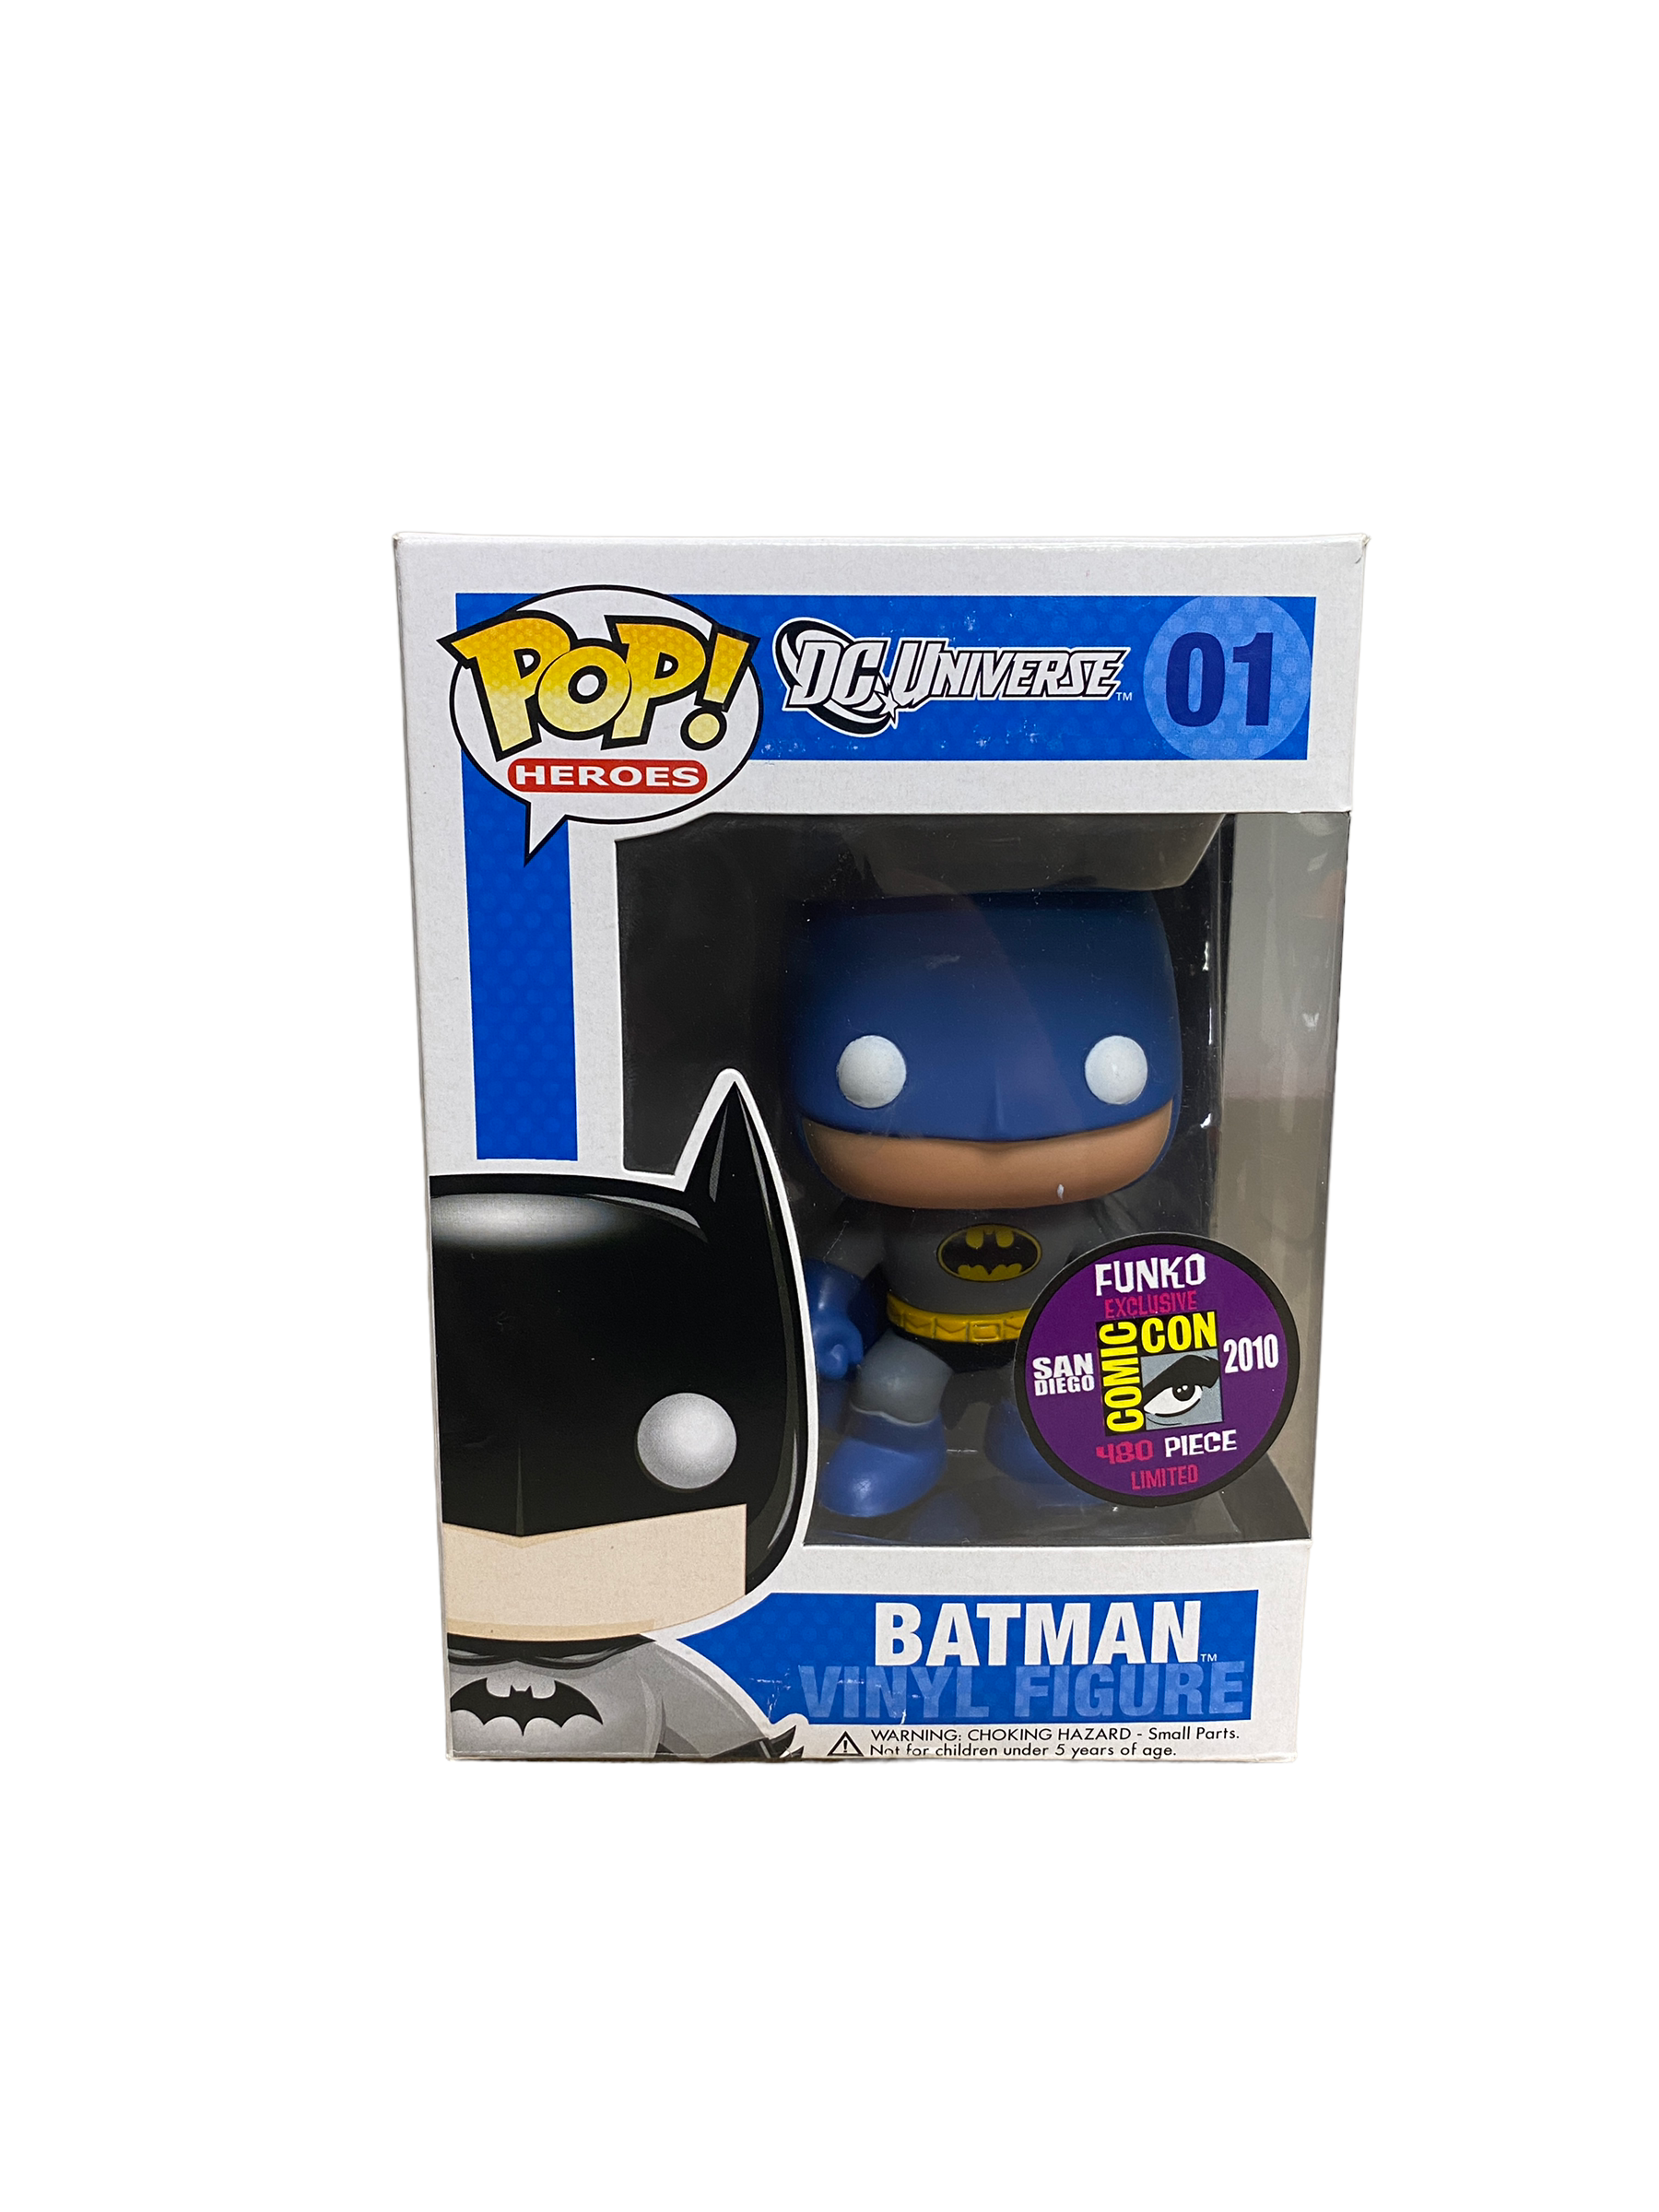 Batman #01 (Blue) Funko Pop! - DC Universe - SDCC 2010 Exclusive LE480 Pcs - Condition 7.5/10